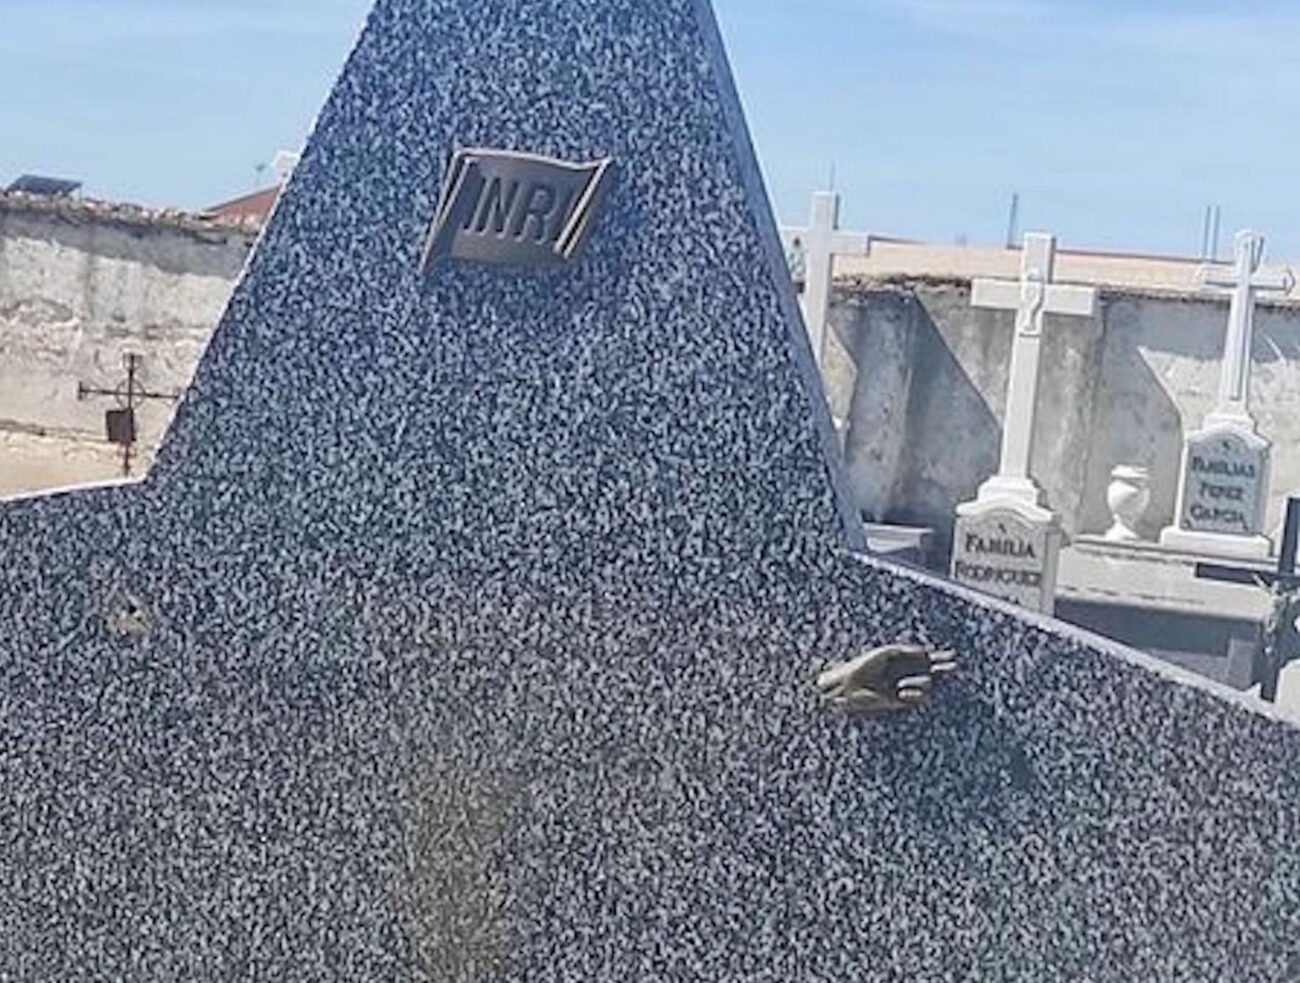 Unos sujetos roban y destrozan varias sepulturas del cementerio de Pozal de Gallinas